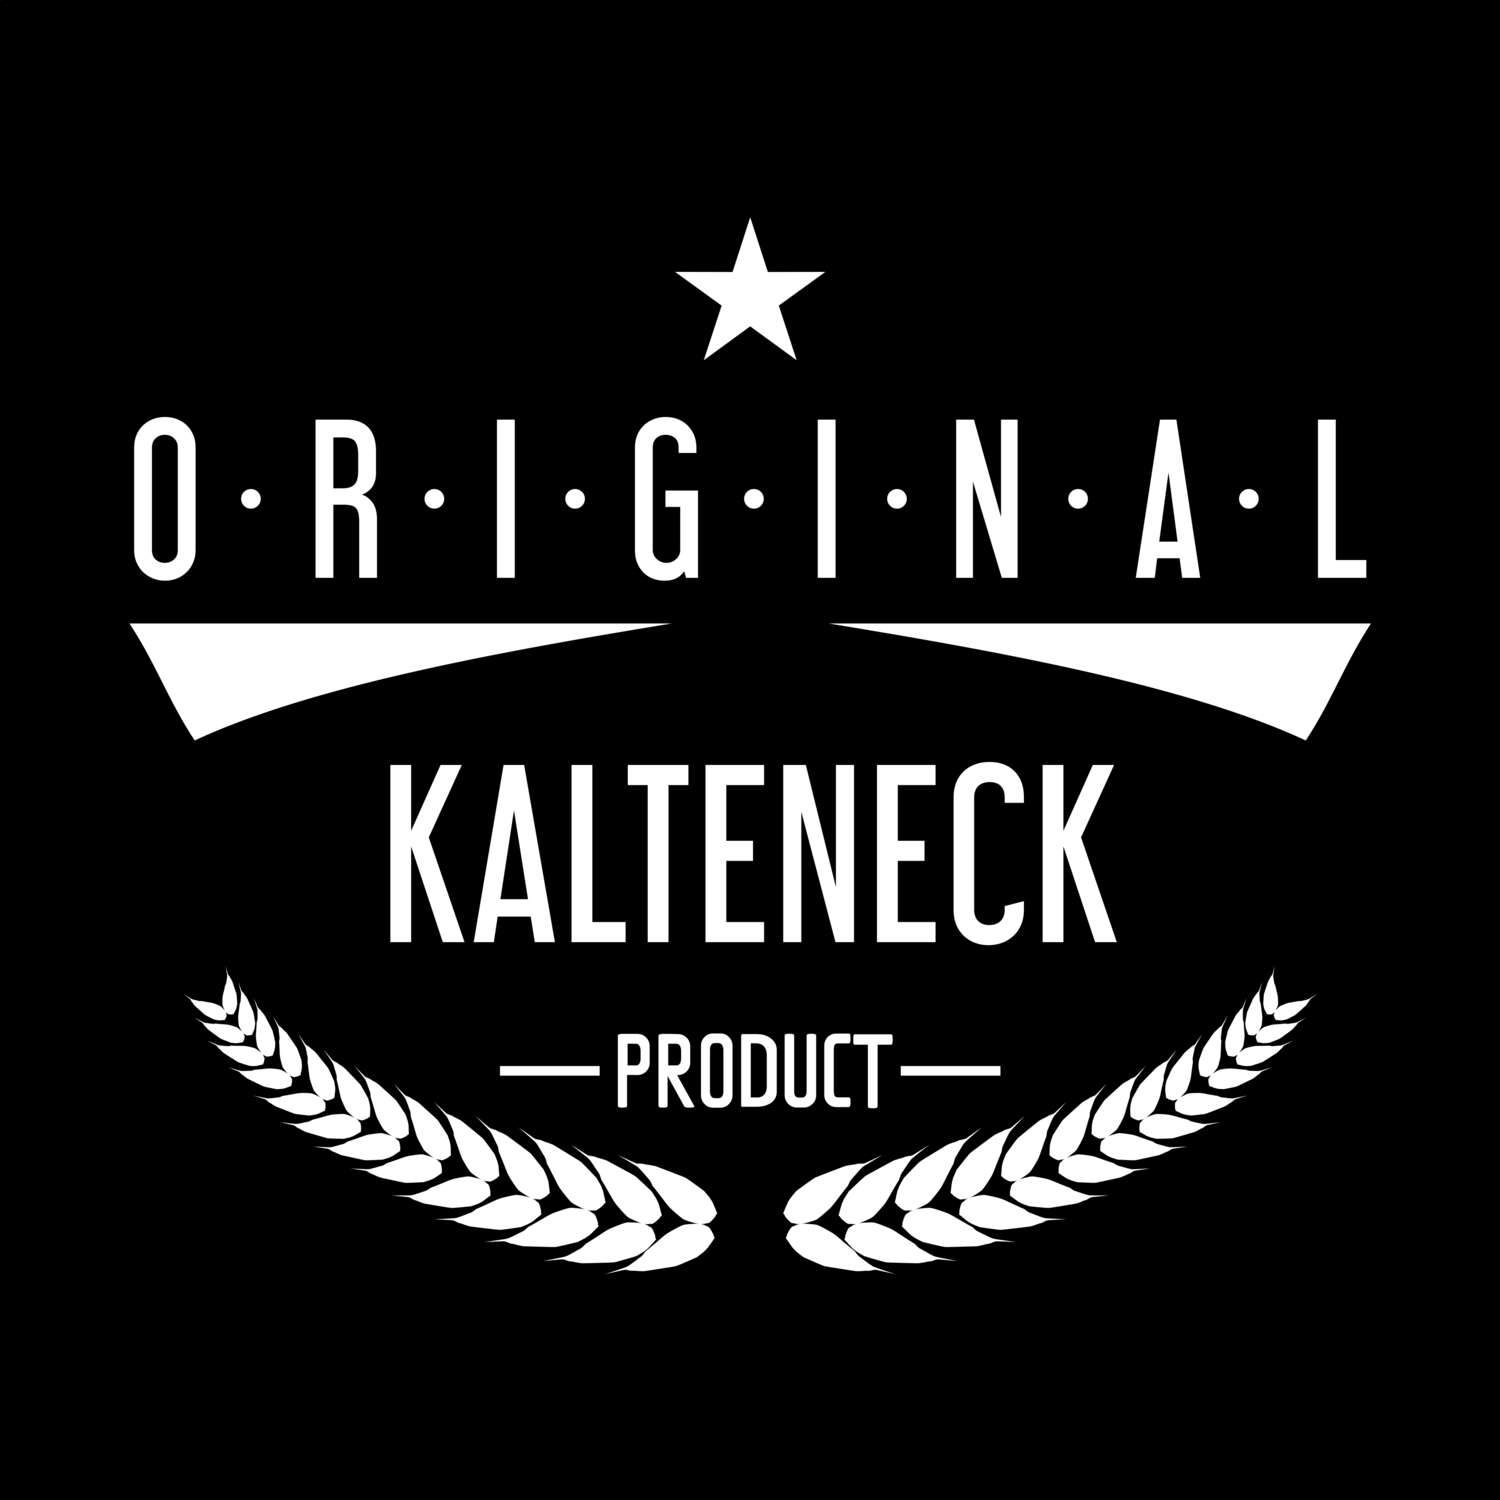 Kalteneck T-Shirt »Original Product«